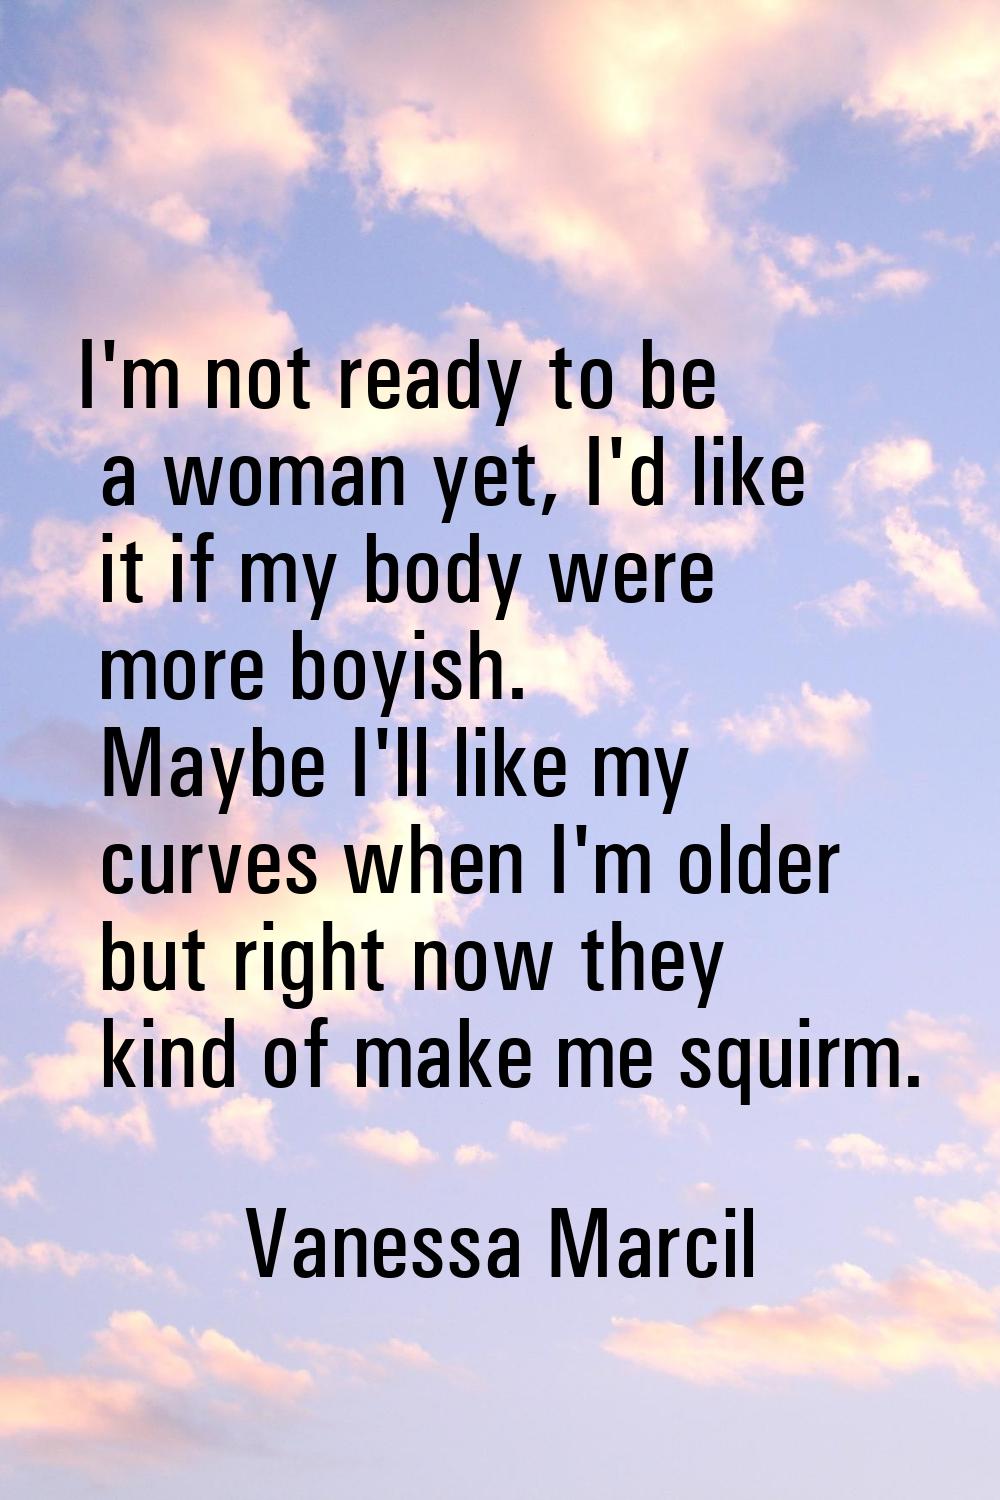 I'm not ready to be a woman yet, I'd like it if my body were more boyish. Maybe I'll like my curves